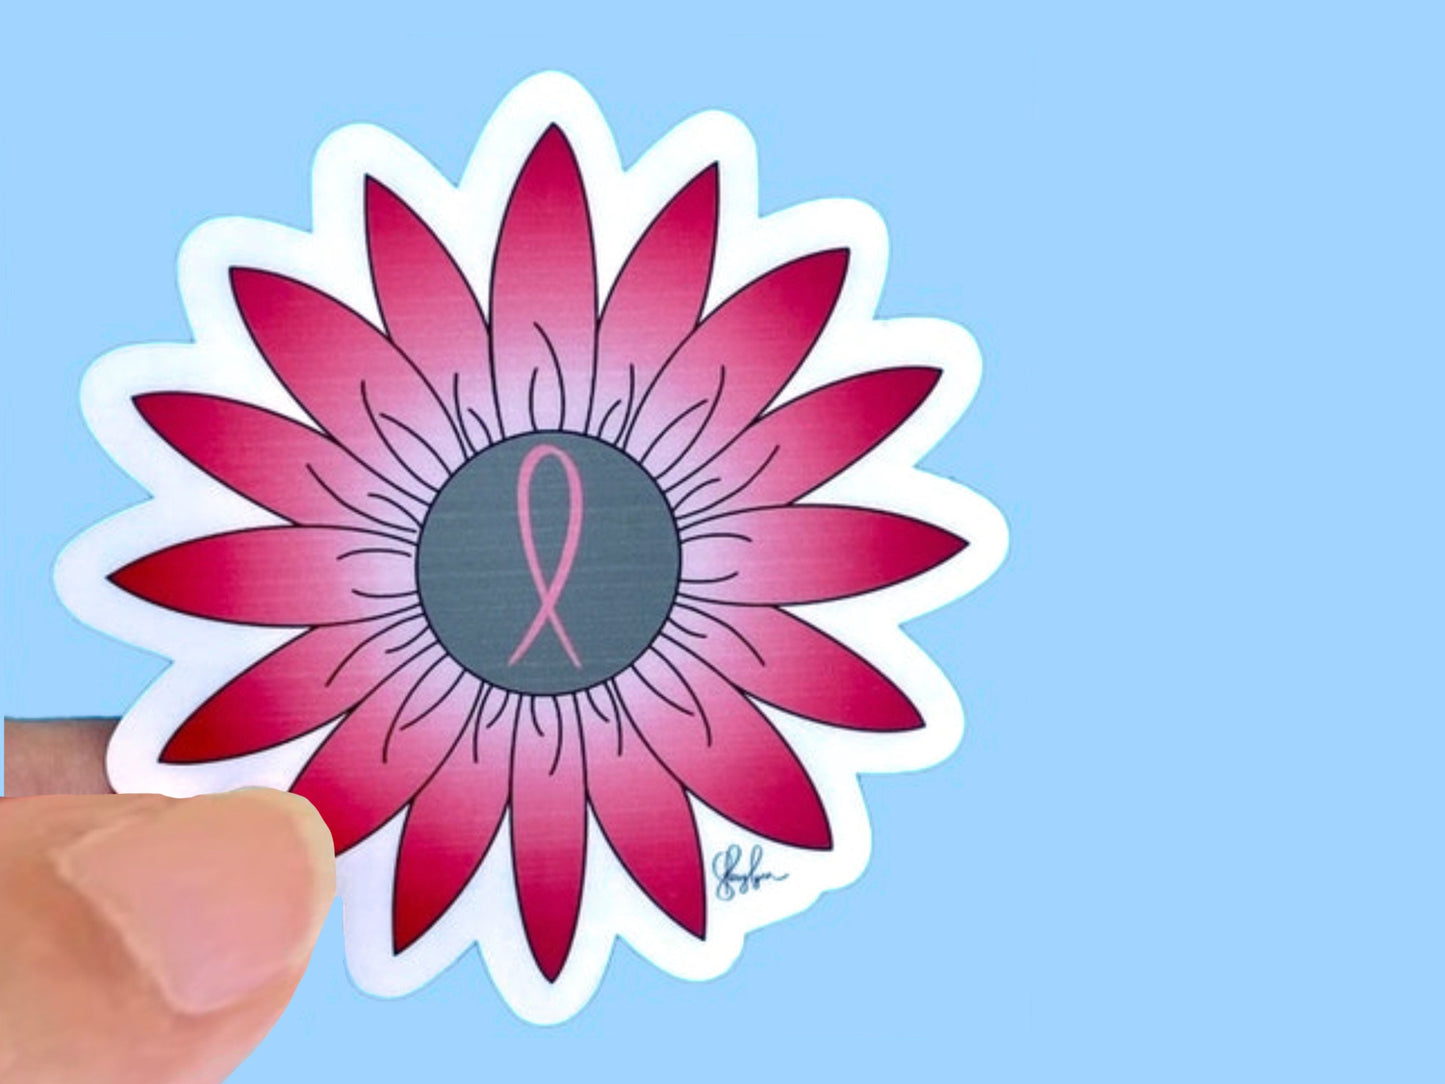 Breast cancer flower  Sticker, Waterproof Vinyl Decal, Laptop Sticker, Water Bottle Sticker, Aesthetic Stickers,